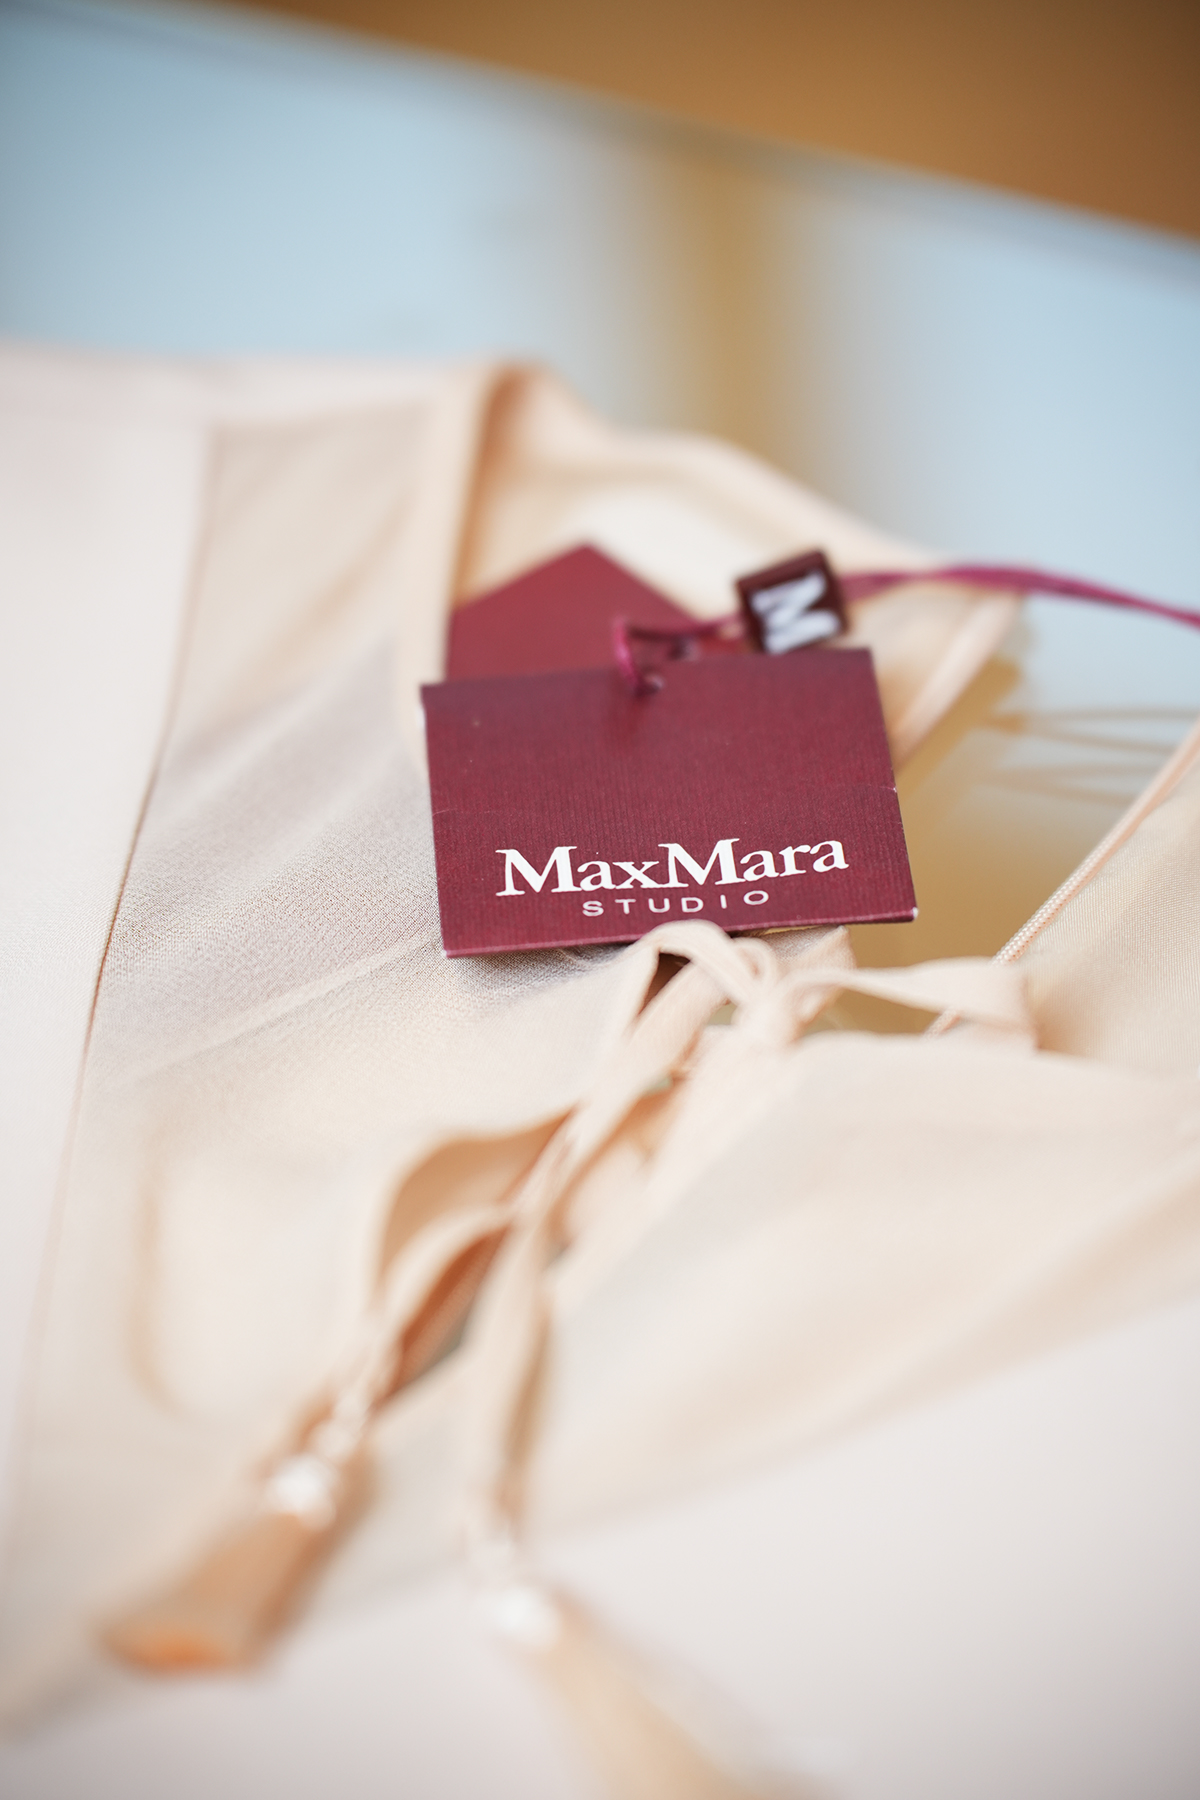 MAX MARA STUDIO Sommerkleid -  Rosé - Gr. 34 – Top Zustand